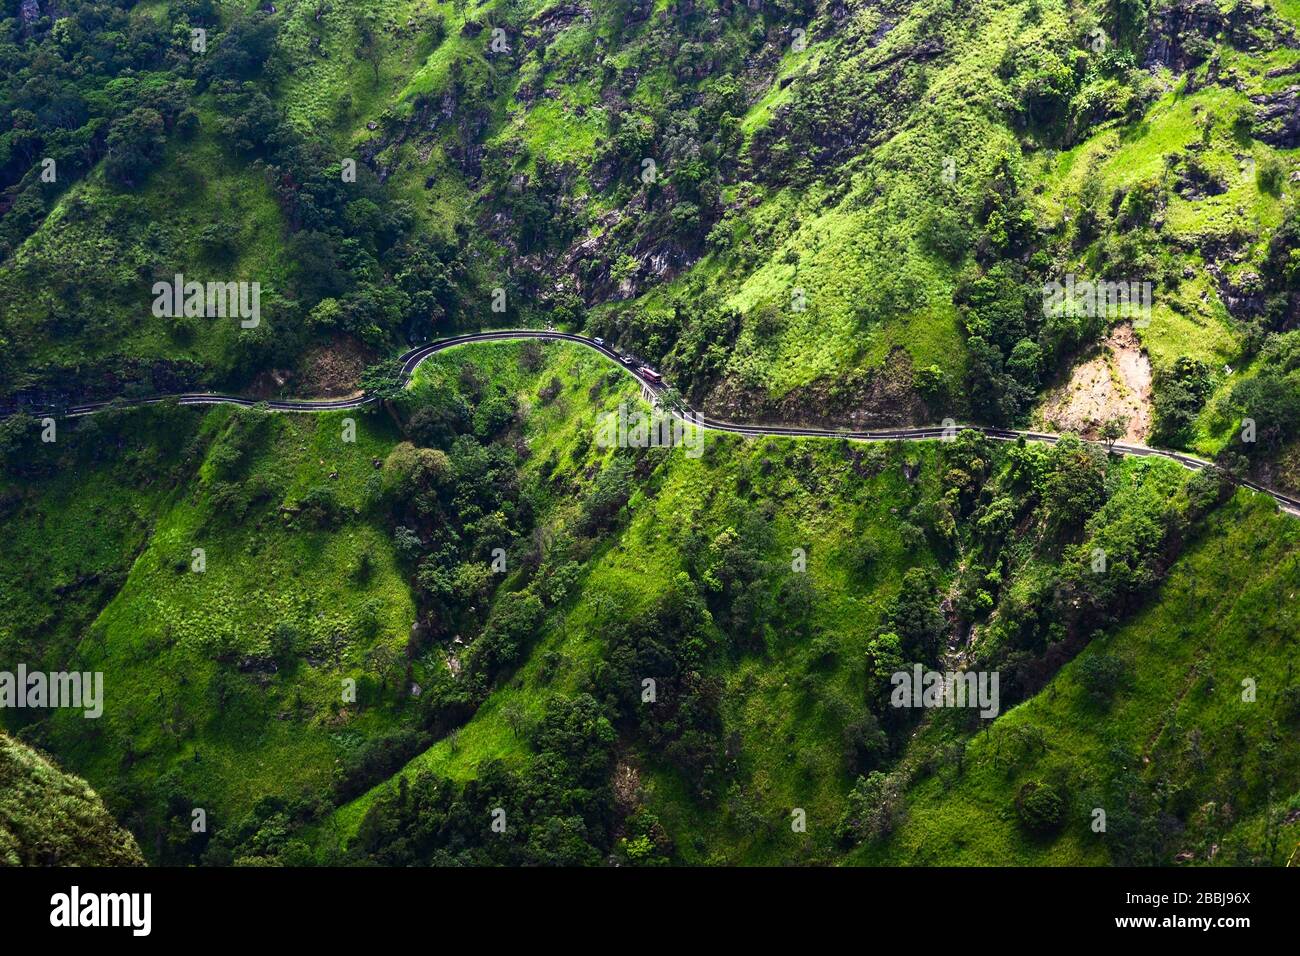 Route de montagne incurvée avec voitures et bus depuis la vue aérienne. Herbe de couleur verte vive sur les montagnes rocheuses. Route en serpentine venteuse près d'Ella, Sri Lanka Banque D'Images